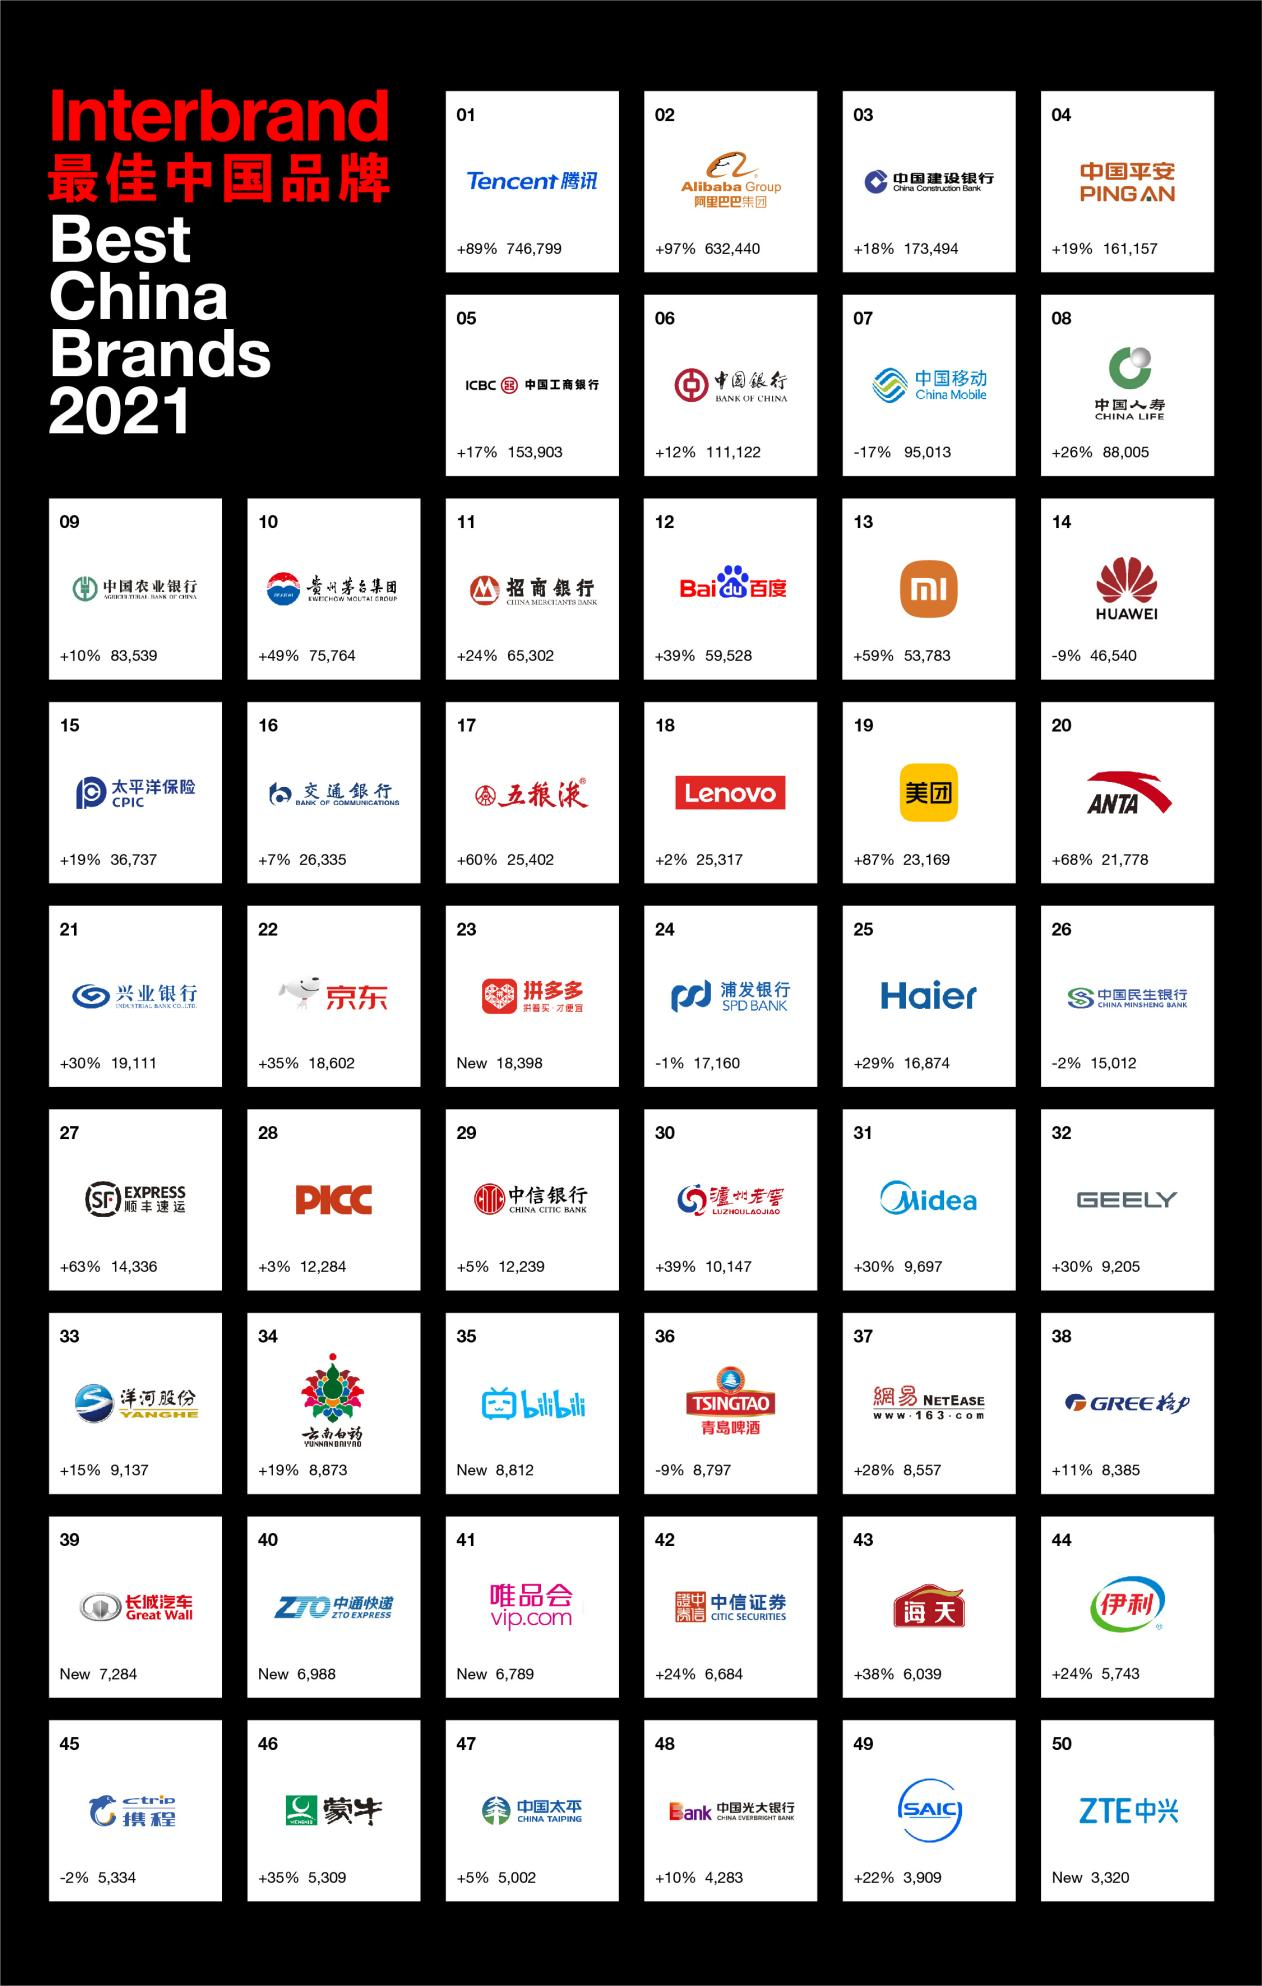 Interbrand 2021中国最佳品牌排行榜,腾讯、阿里巴巴和建行蝉联前三甲